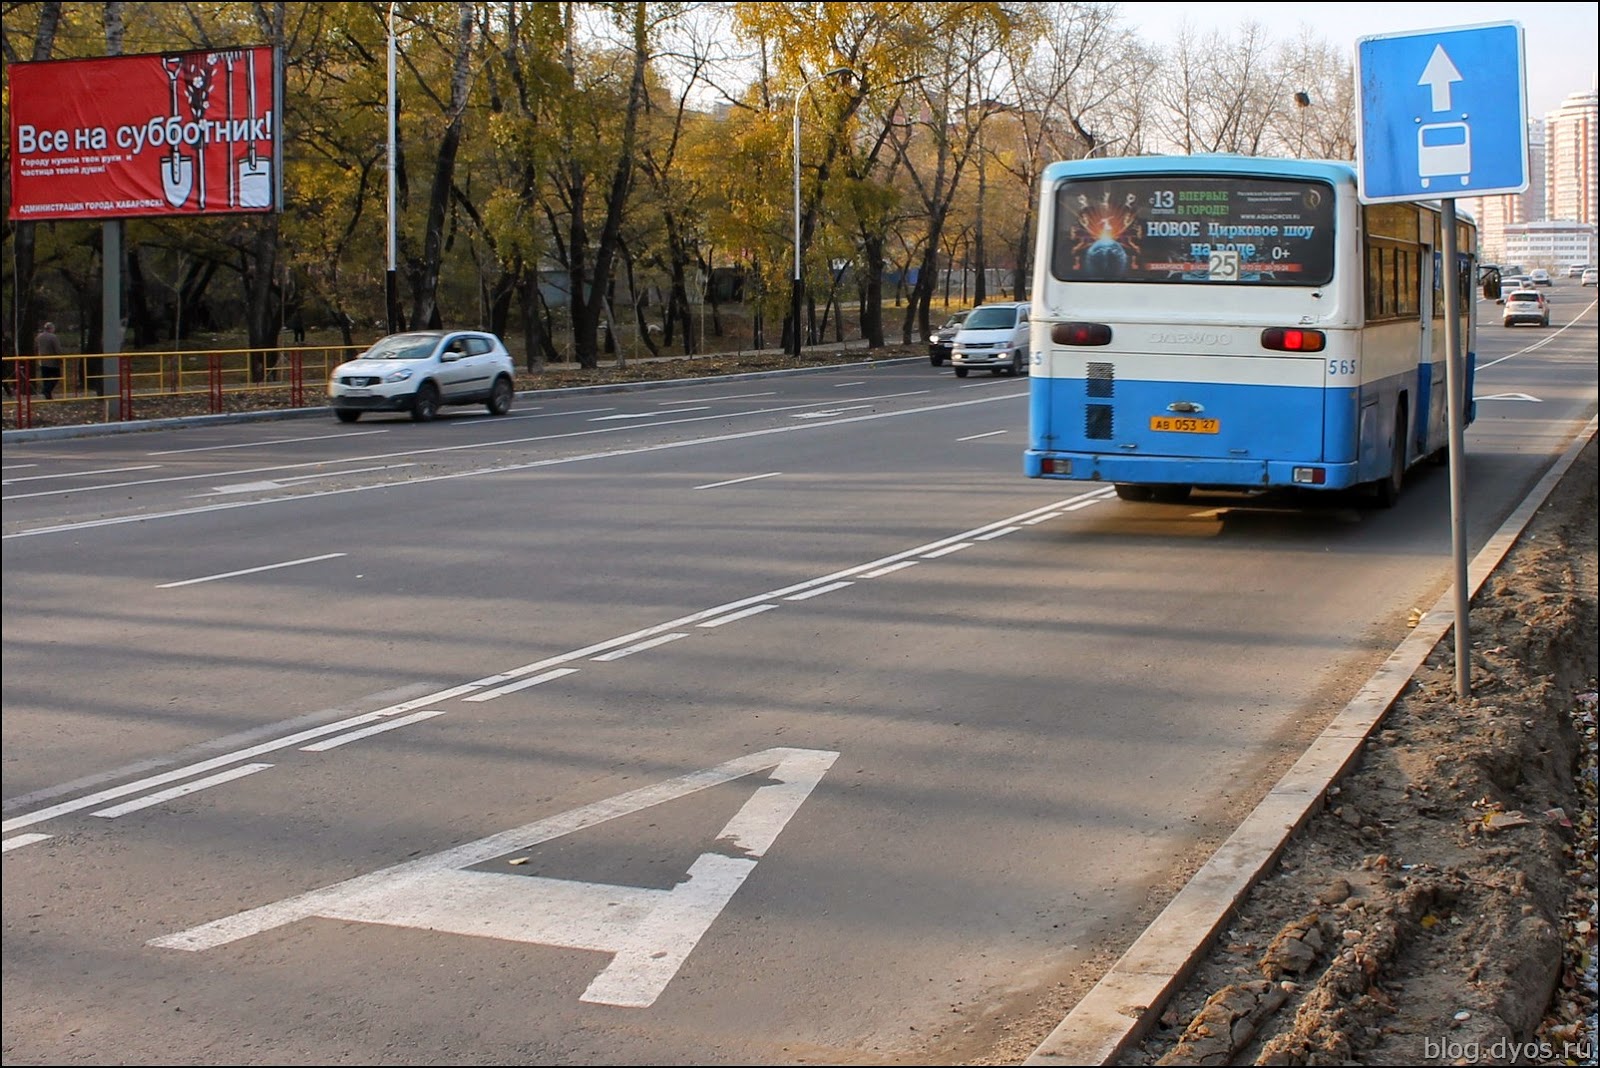 Выделенная автобусная полоса. Автобусная полоса. Выделенная полоса для общественного транспорта. Полоса для автобусов. Знак полоса для автобусов.